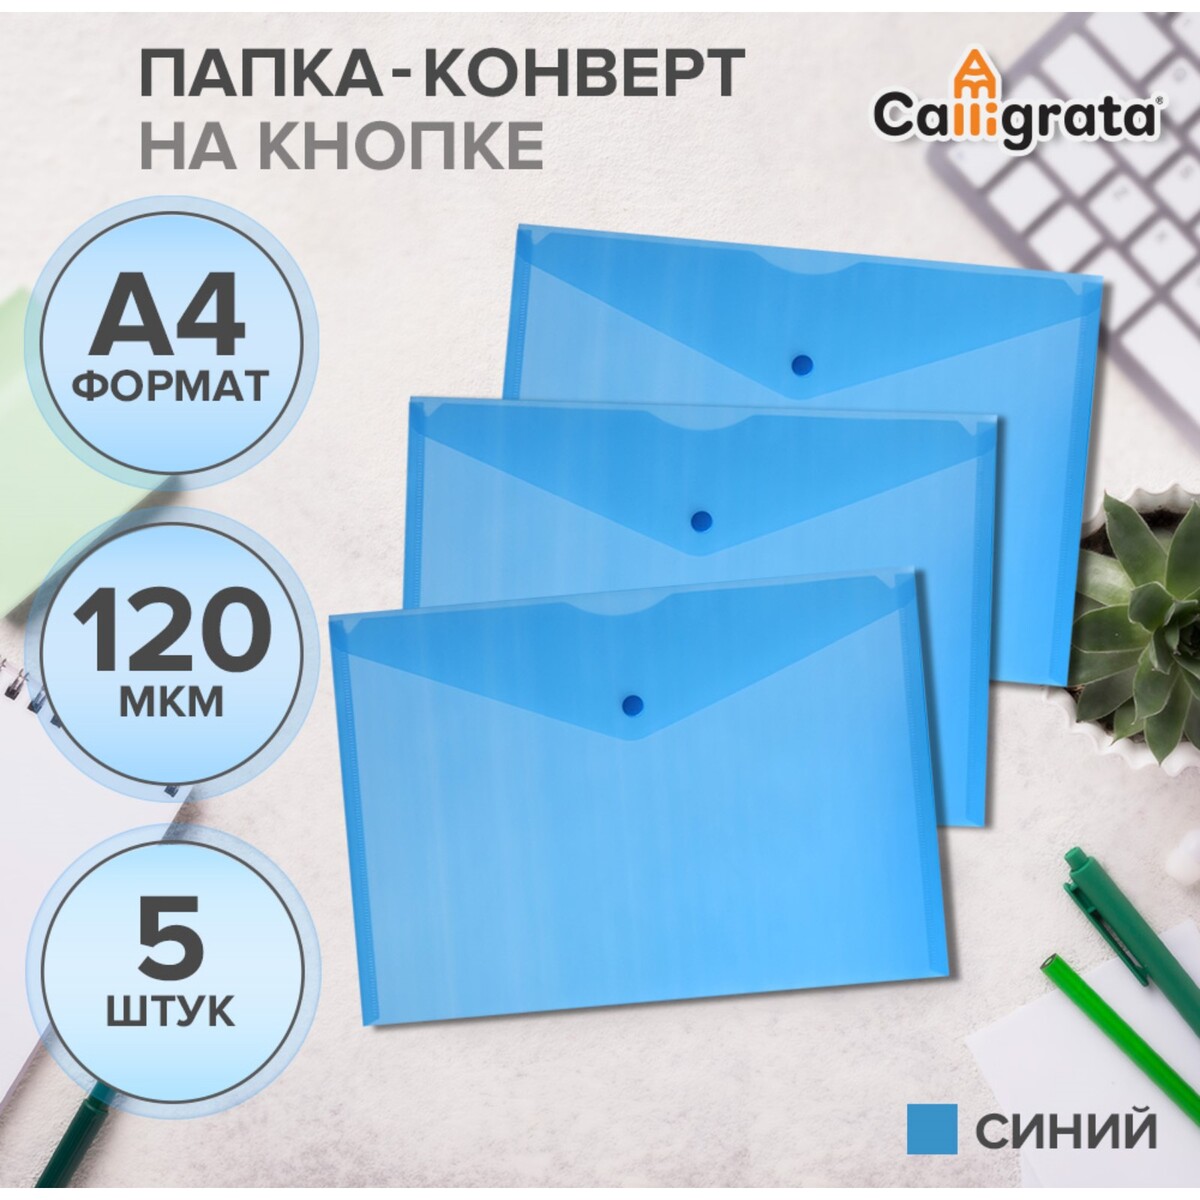 Набор папок-конверов на кнопке 5 шт. calligrata, а4, 120мкм, синий